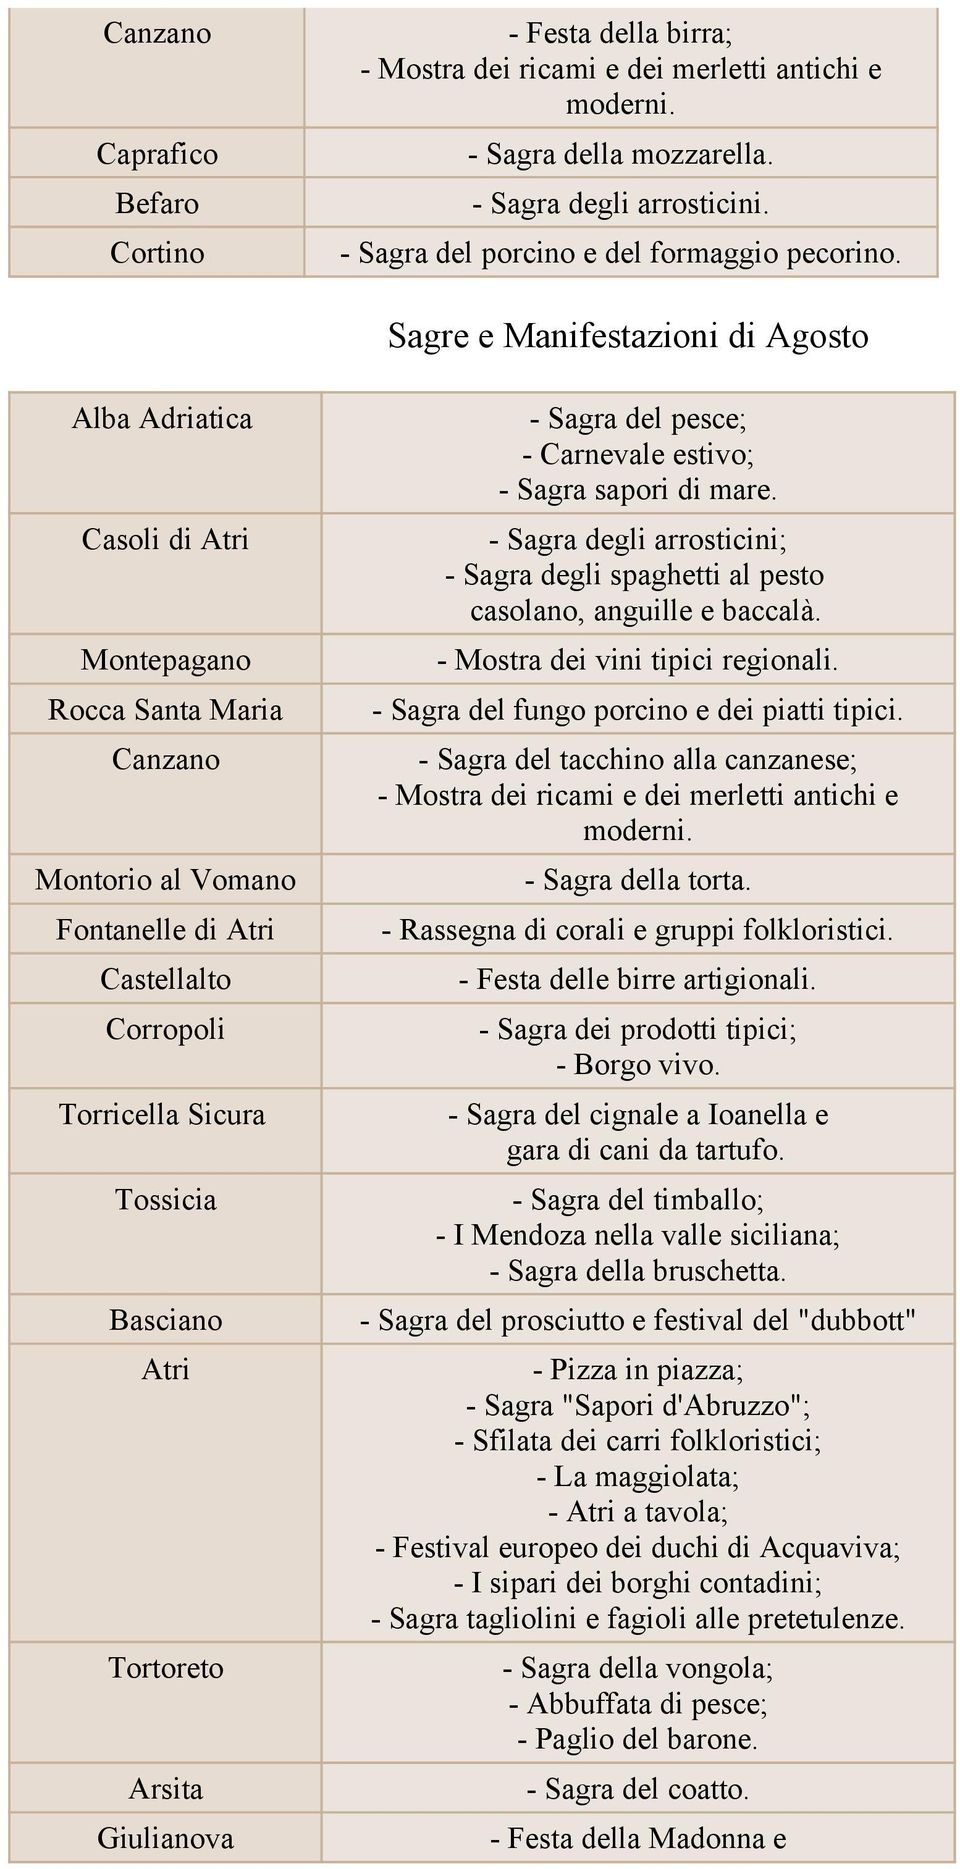 Casoli di Atri - Sagra degli arrosticini; - Sagra degli spaghetti al pesto casolano, anguille e baccalà. Montepagano - Mostra dei vini tipici regionali.